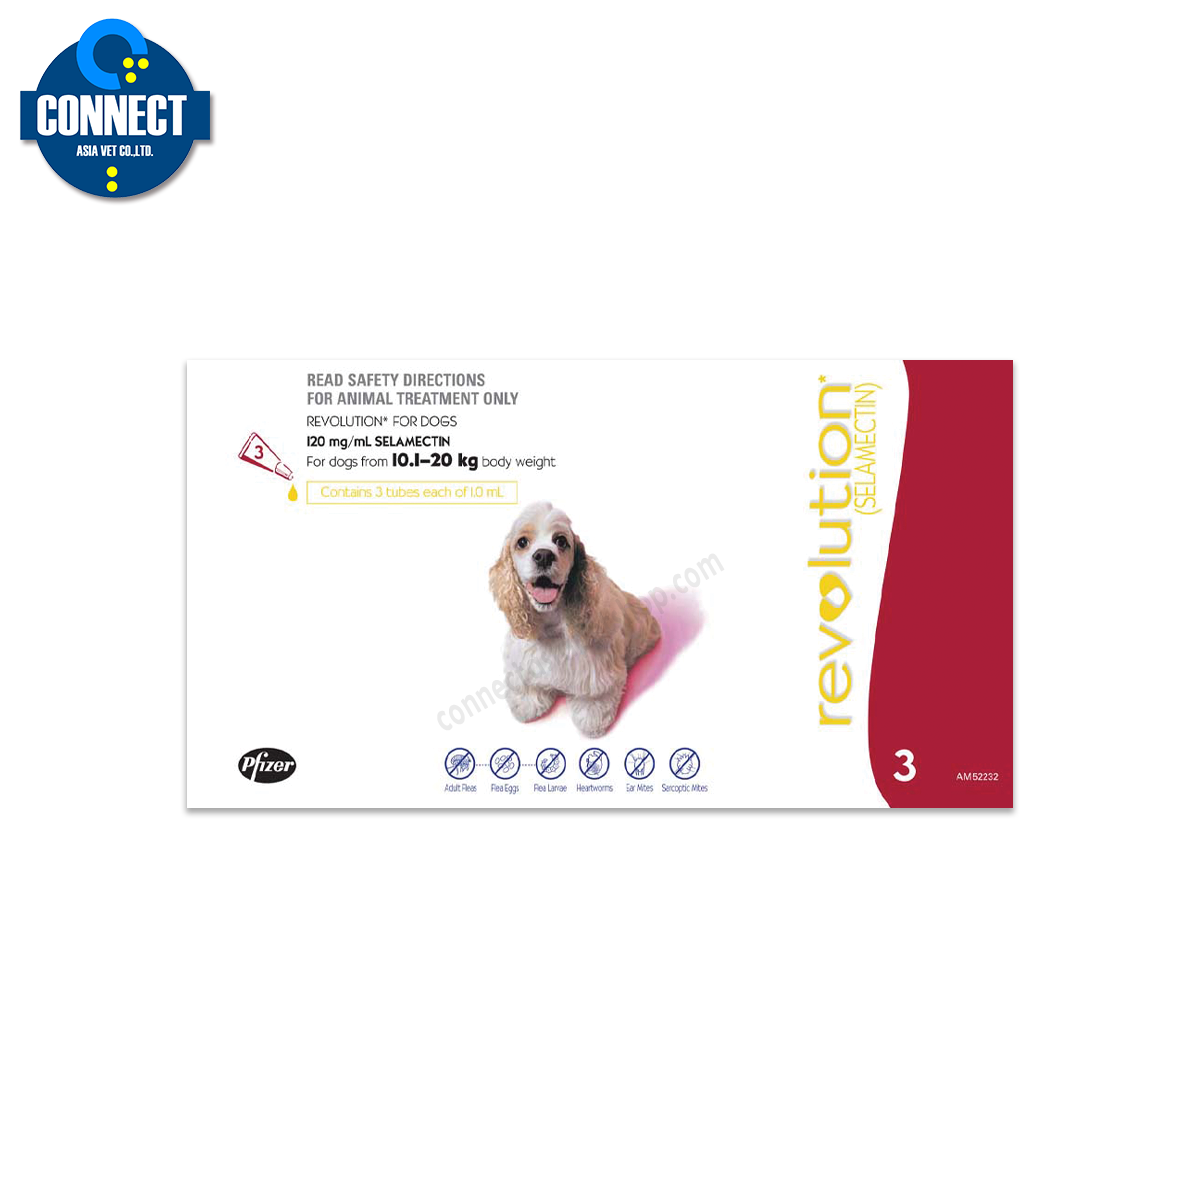 Revolution เรโวลูชั่น ยากำจัดเห็บหมัดชนิดหยด สำหรับสุนัขน้ำหนัก 10-20 กิโลกรัม EXP. 02- 2023